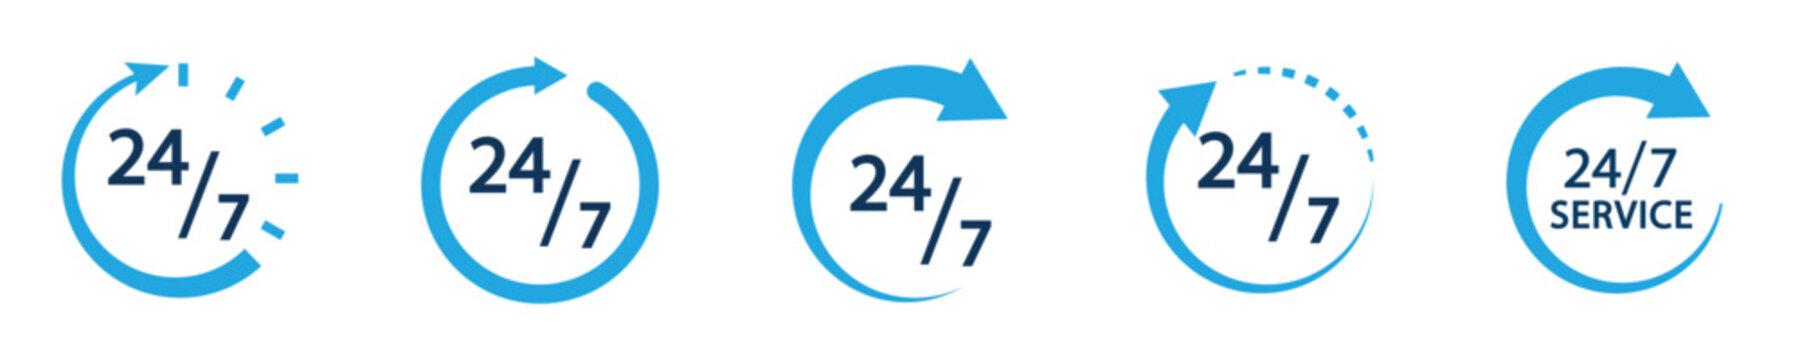 Conjunto de icono de servicio 24/7 estilo azul. Servicio de atención 24 horas. Concepto de horario de atención de un negocio. Siempre abierto. Ilustración vectorial